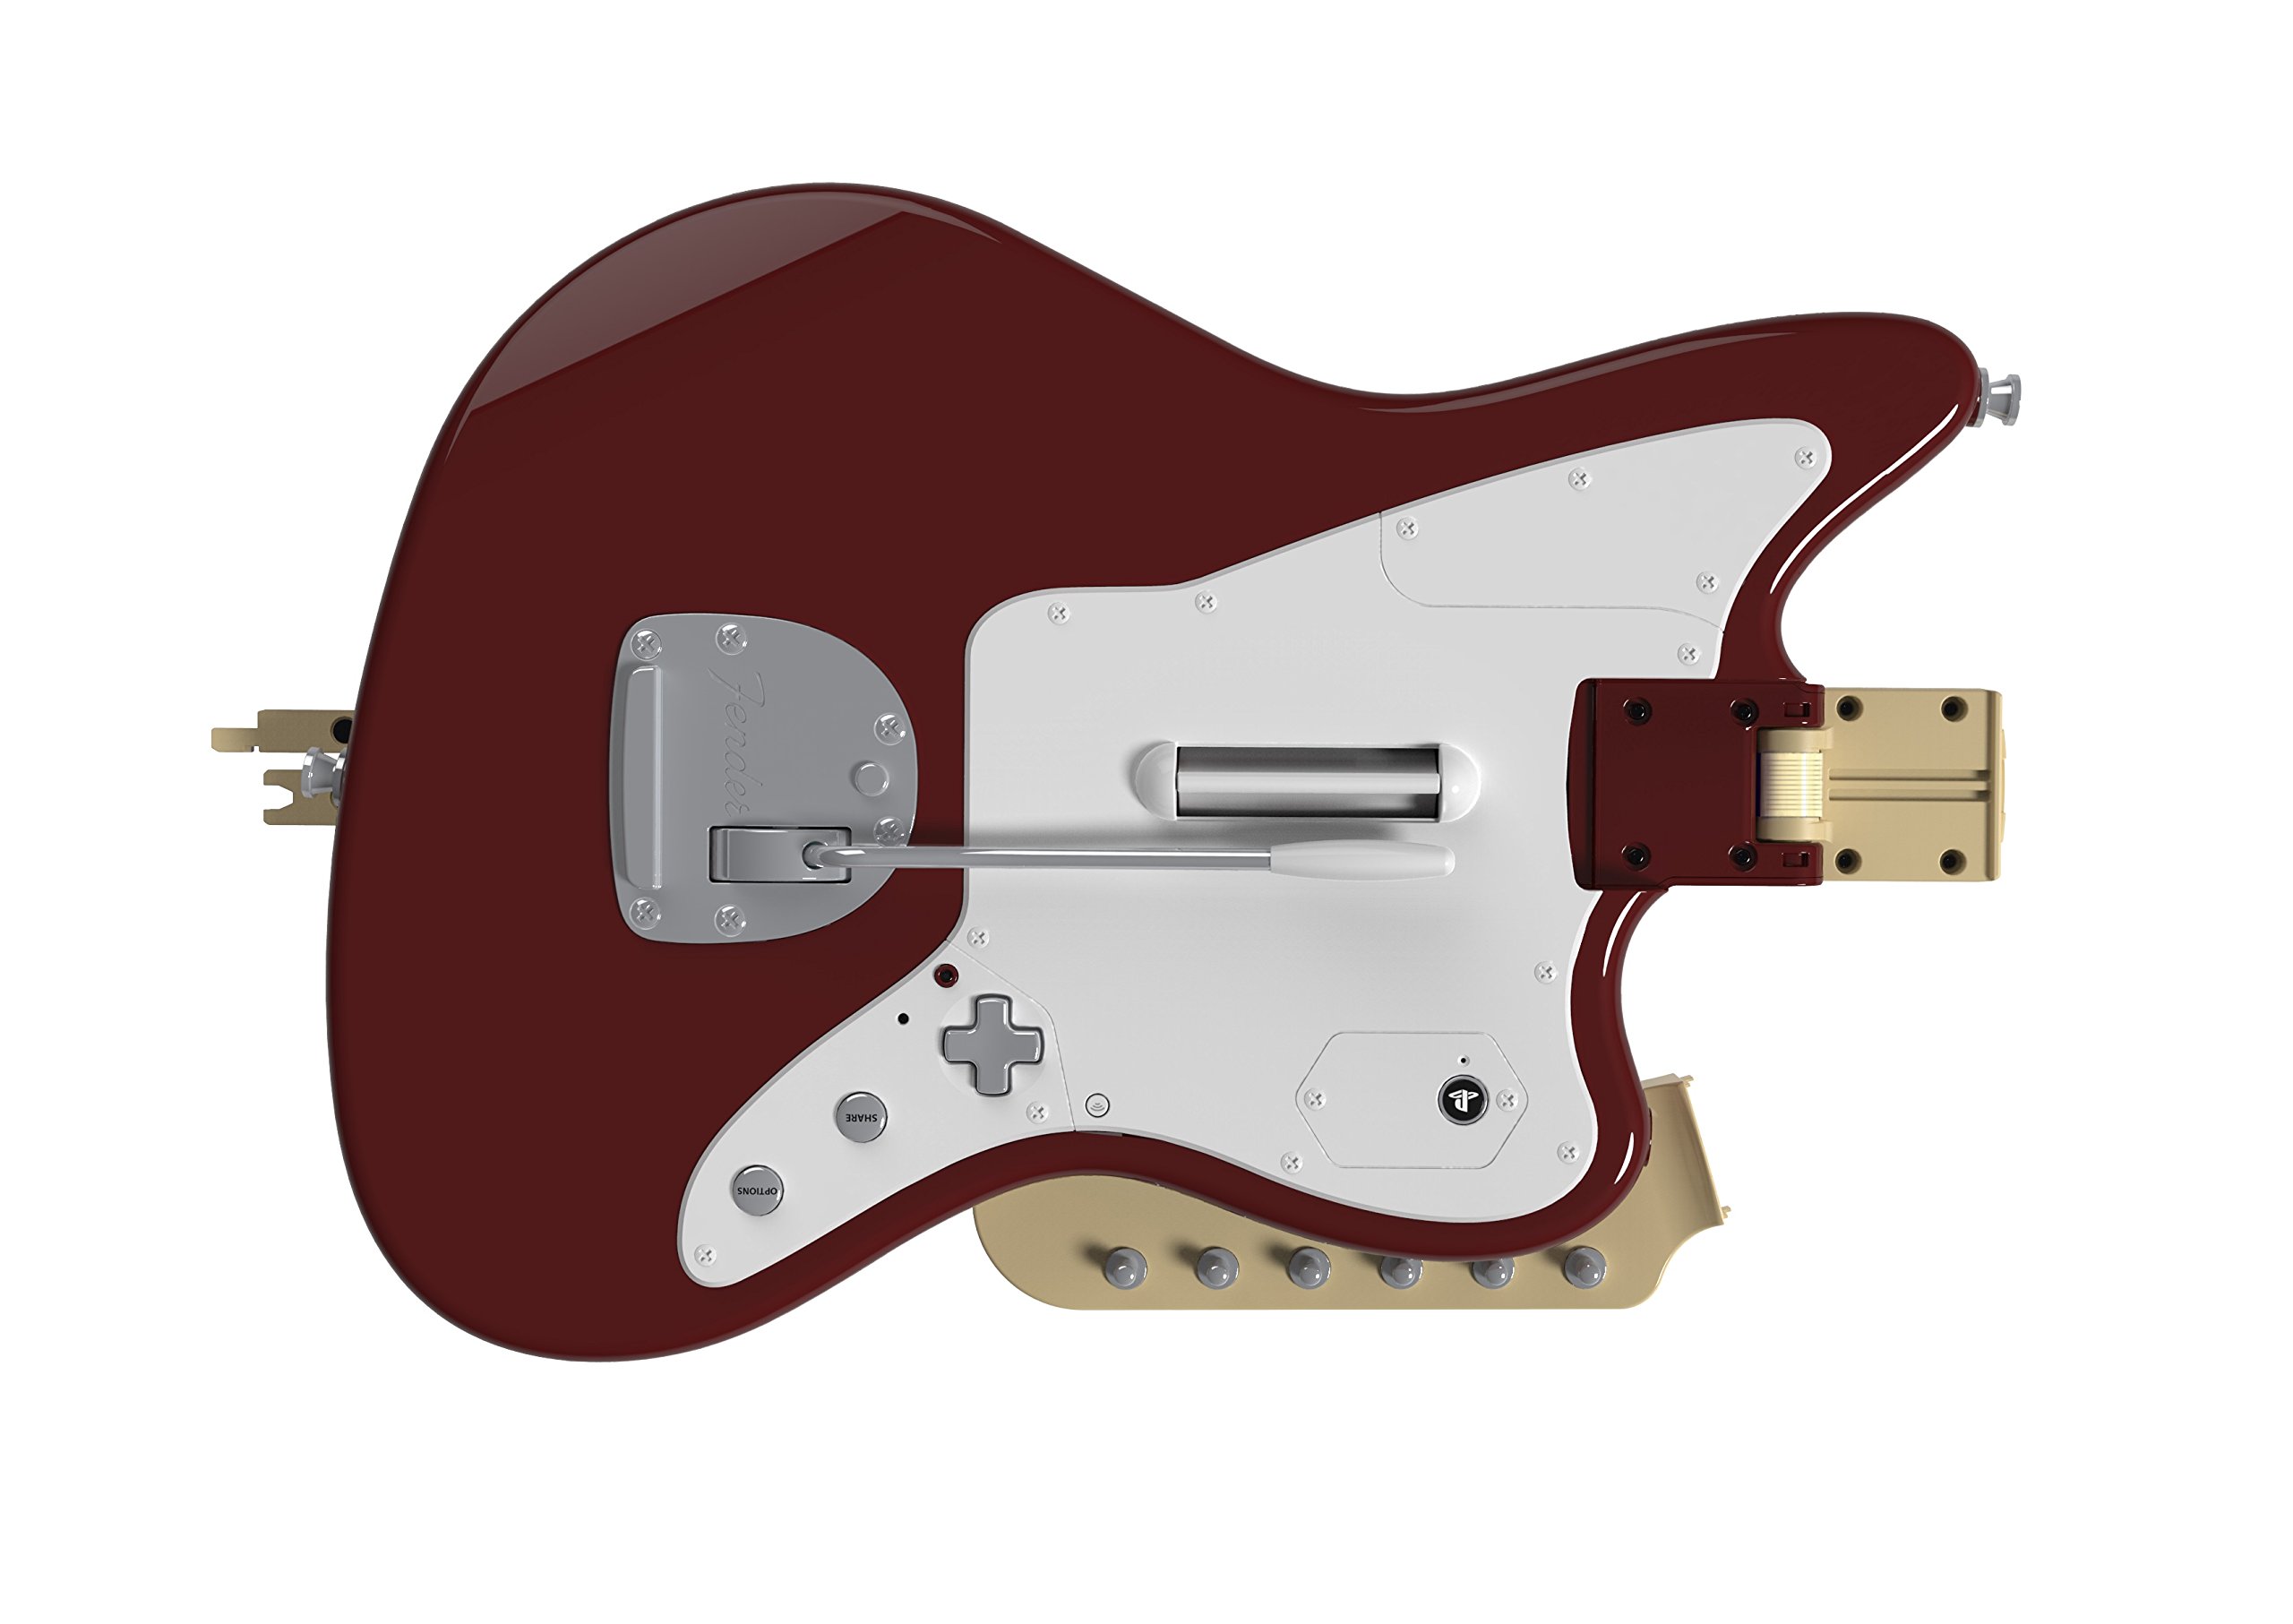 Rock Band Fender Jaguar Guitar Controller for PlayStation 4